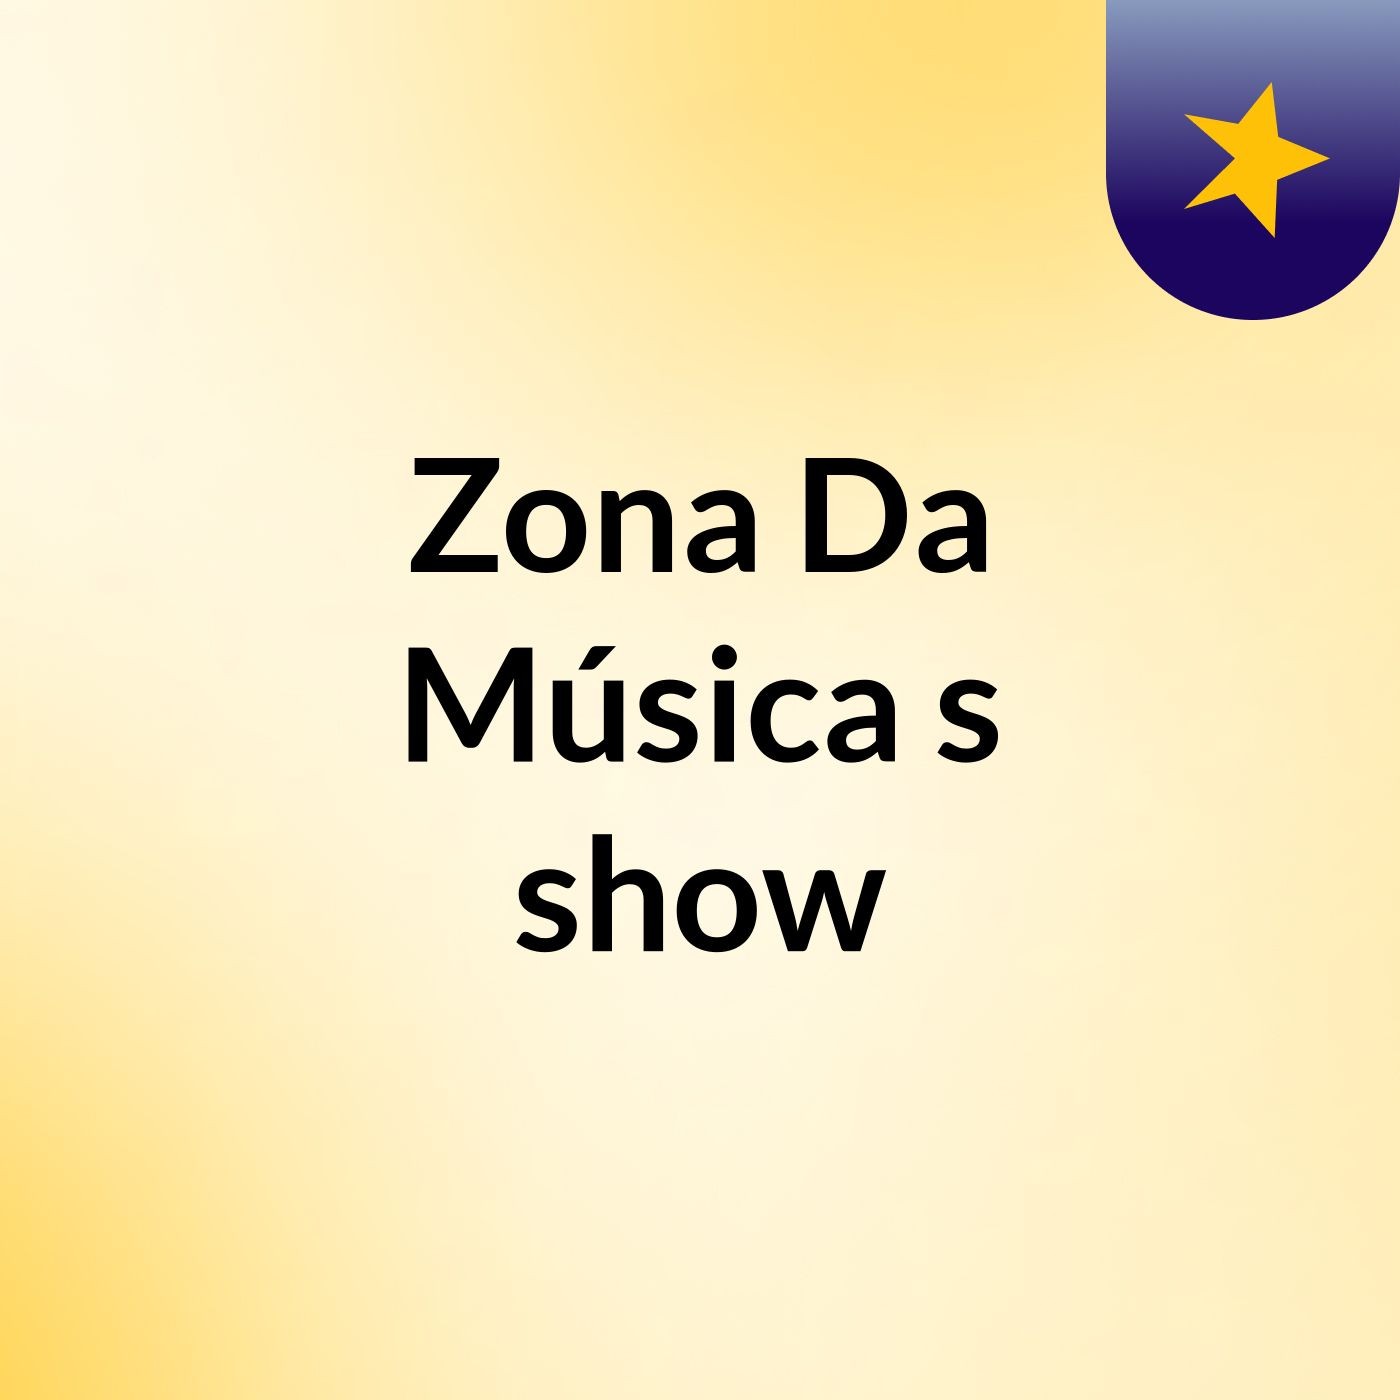 Zona Da Música's show